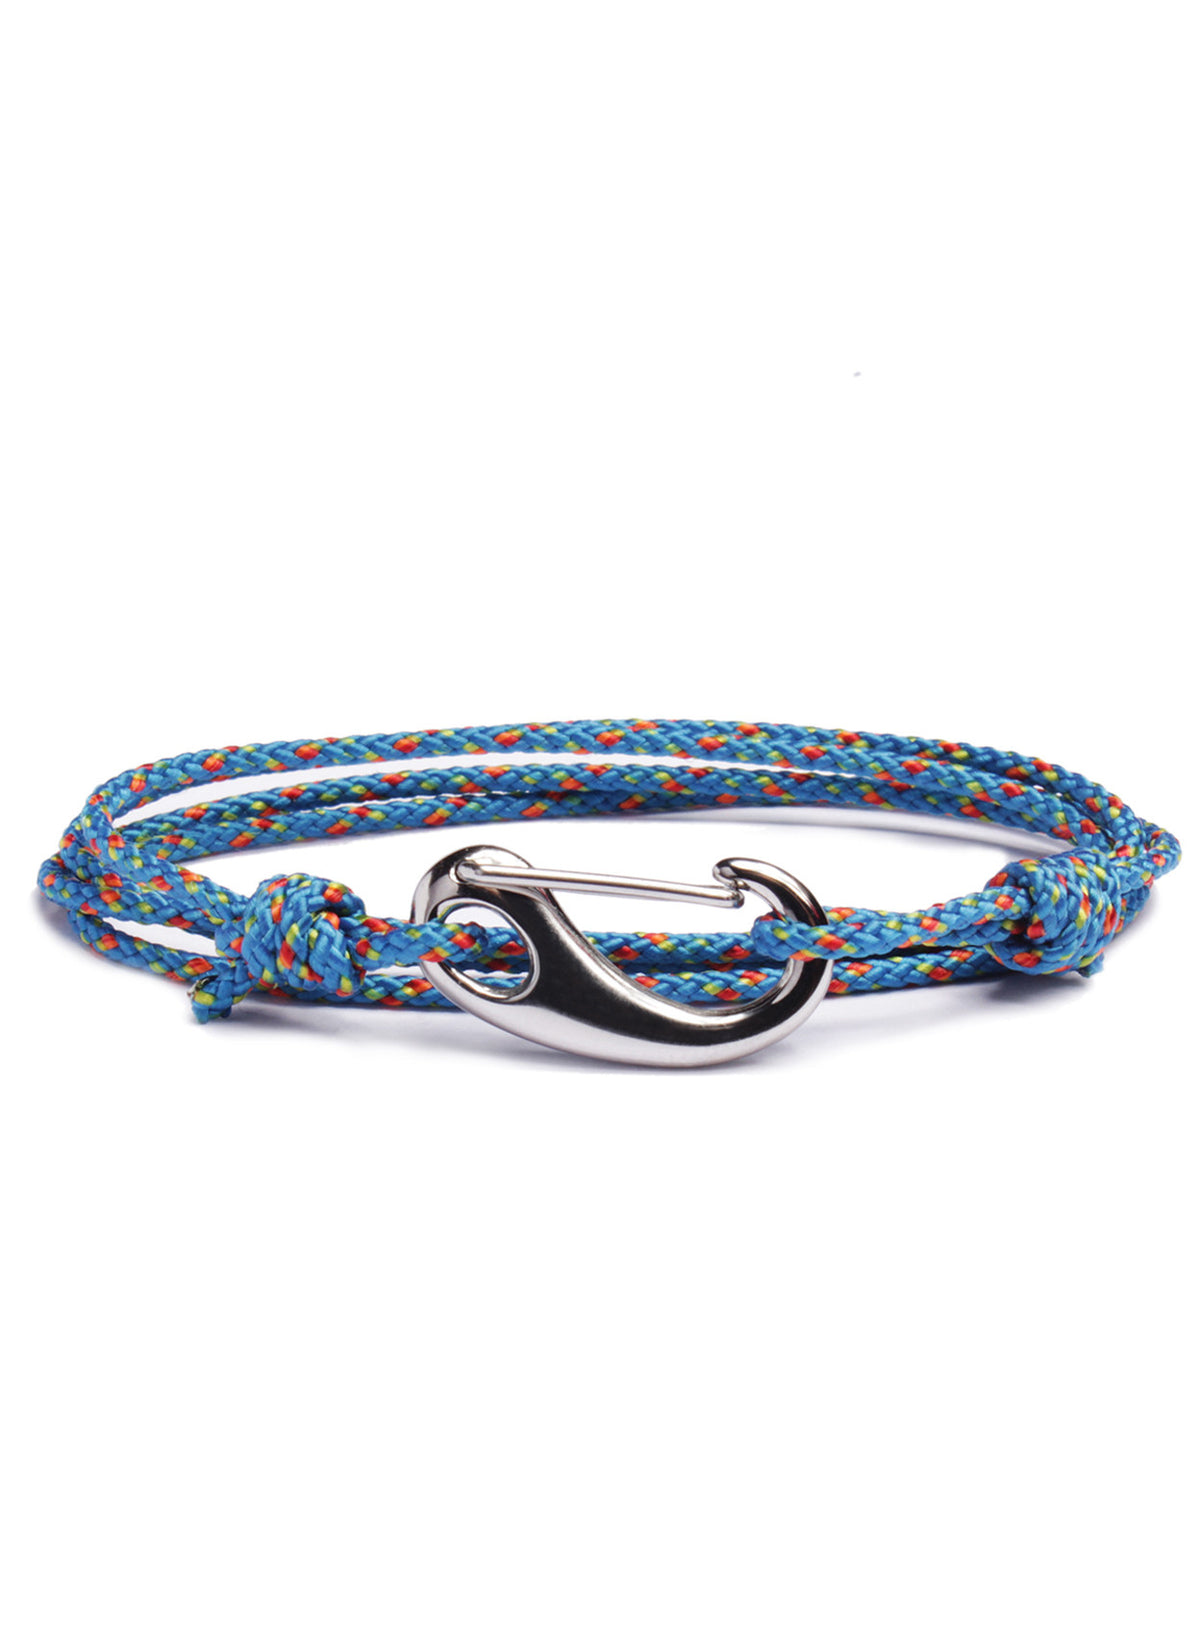 Bracelet Holder - Driftwood Blue & Cargo Trading Co